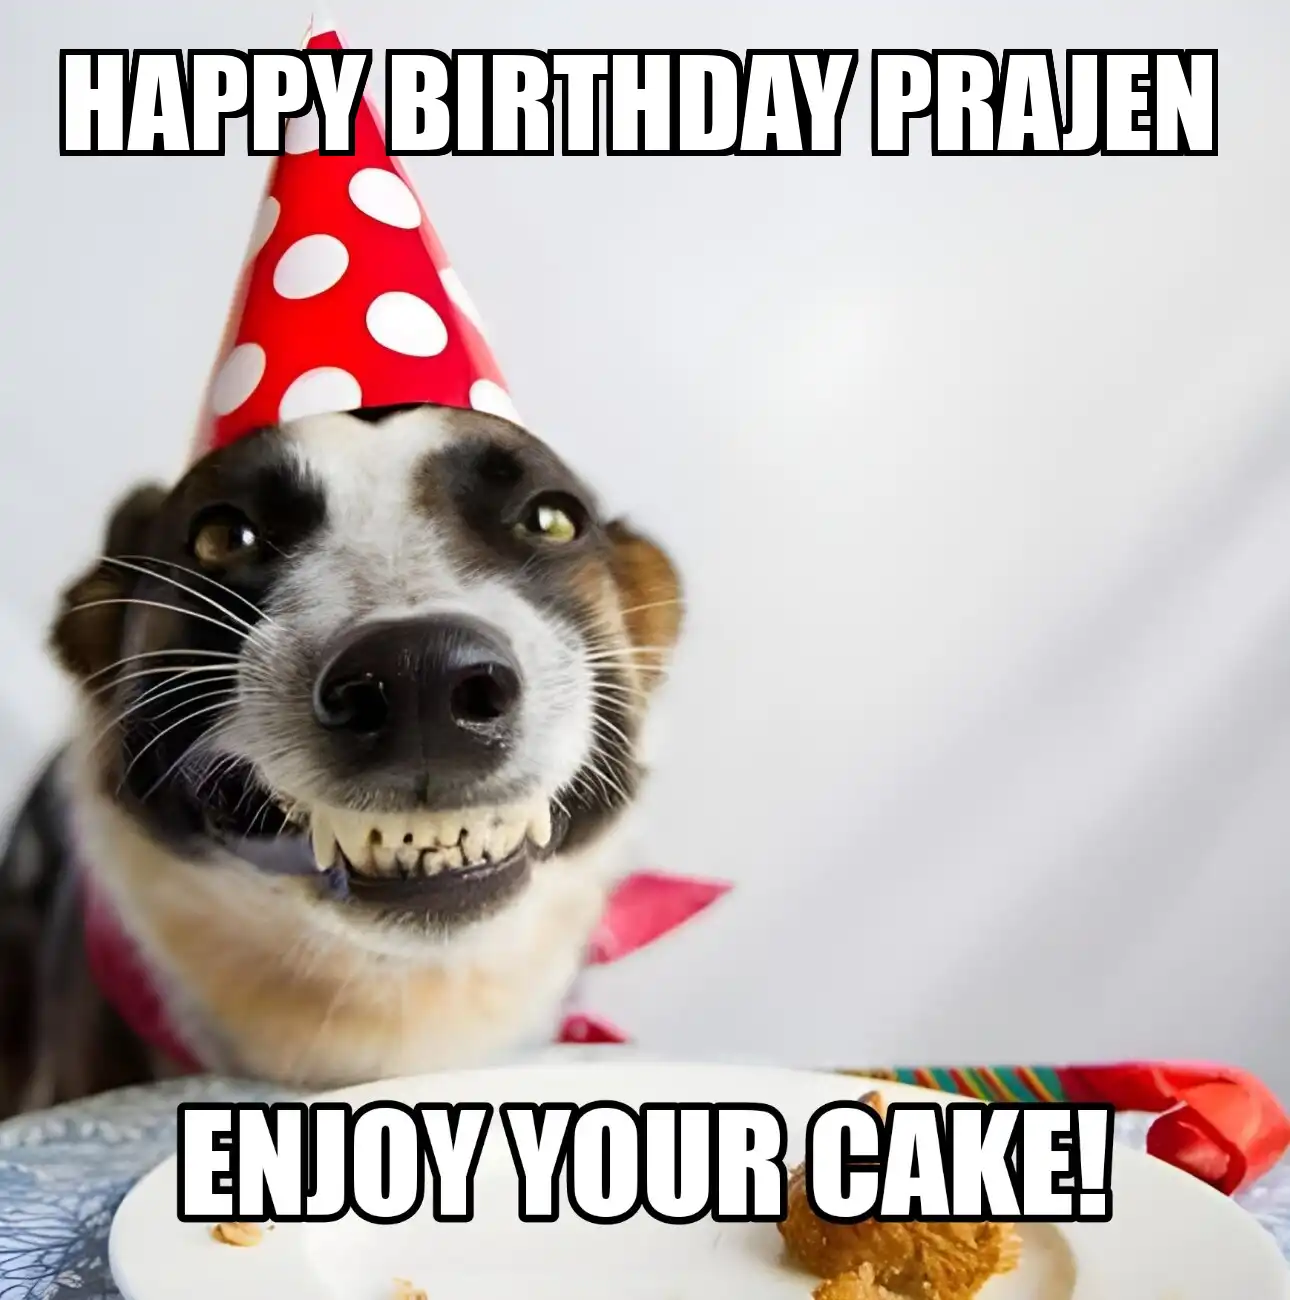 Happy Birthday Prajen Enjoy Your Cake Dog Meme